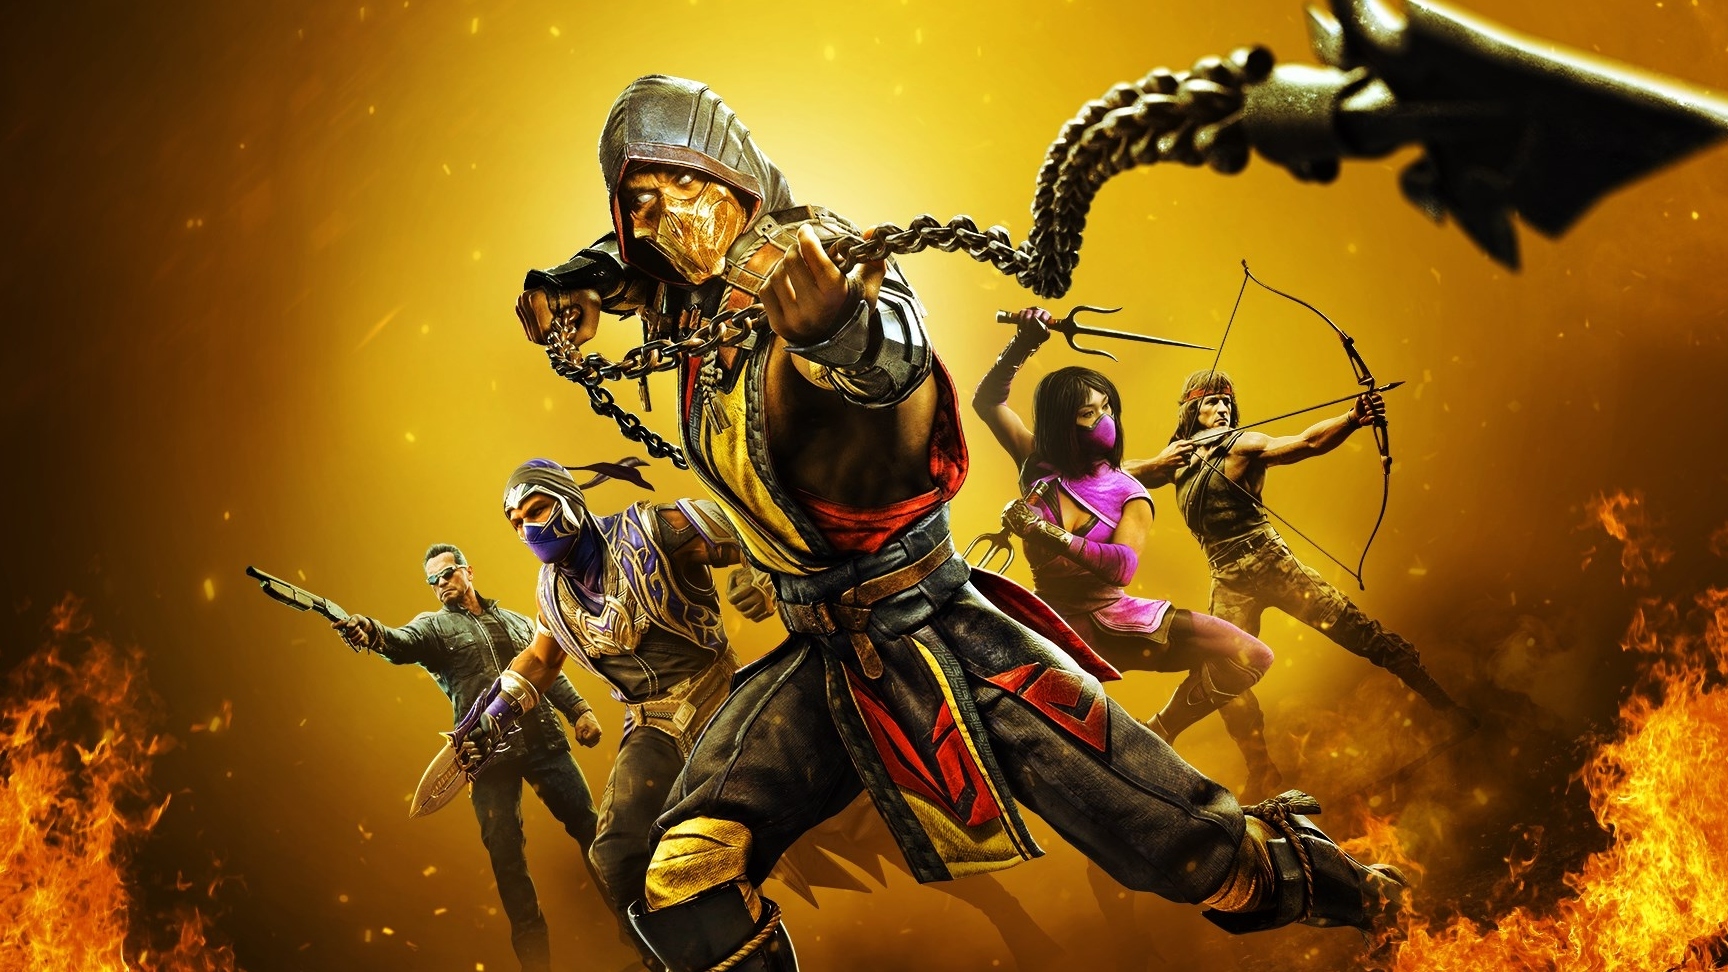 Mortal Kombat 11 Promotional Image